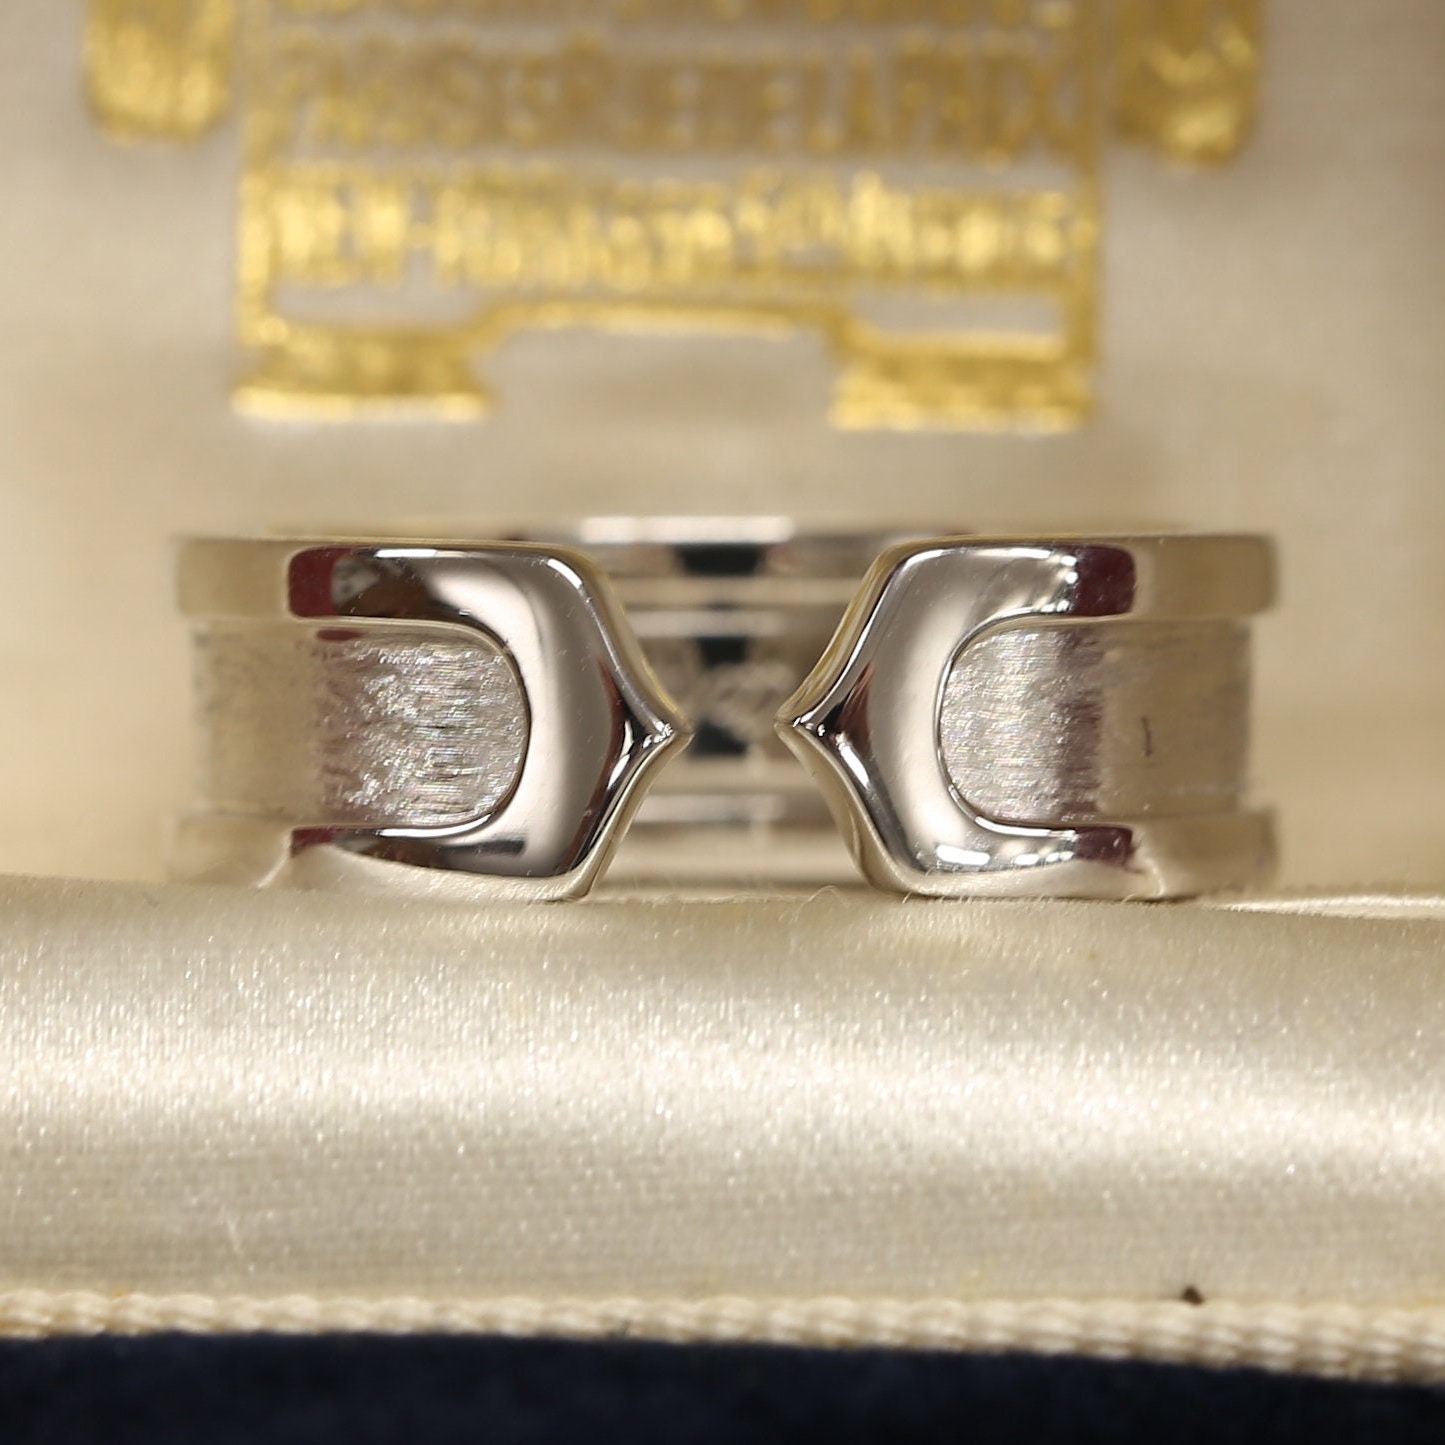 Vintage C de Cartier Diamond Cuff Bracelet – Nally Jewels